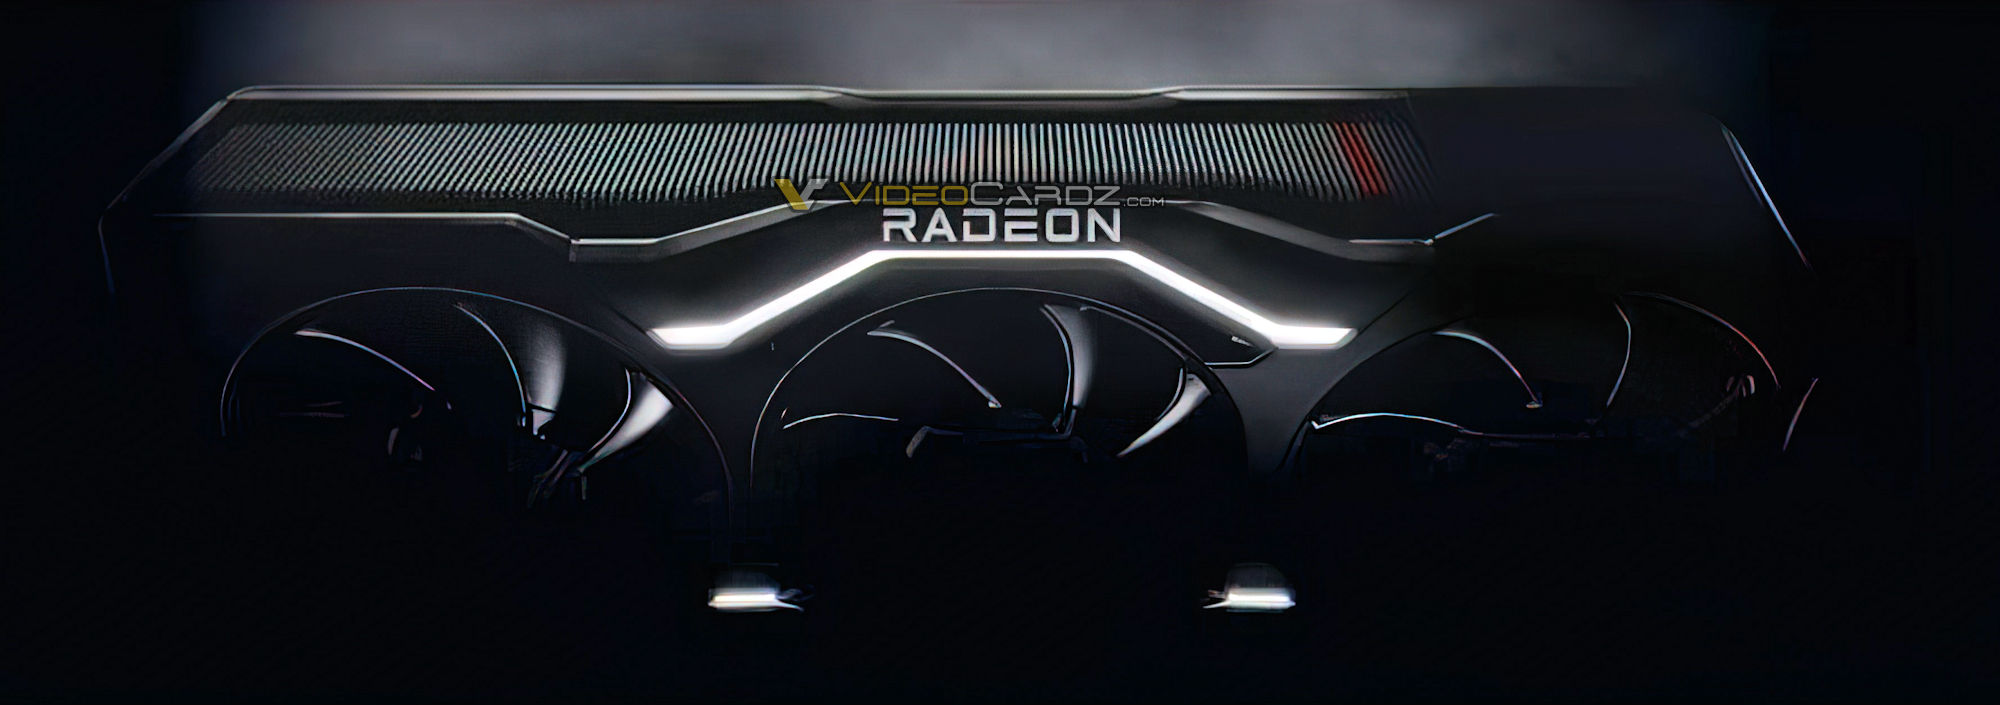 اولین تصویر از کارت گرافیک Radeon RX 7000